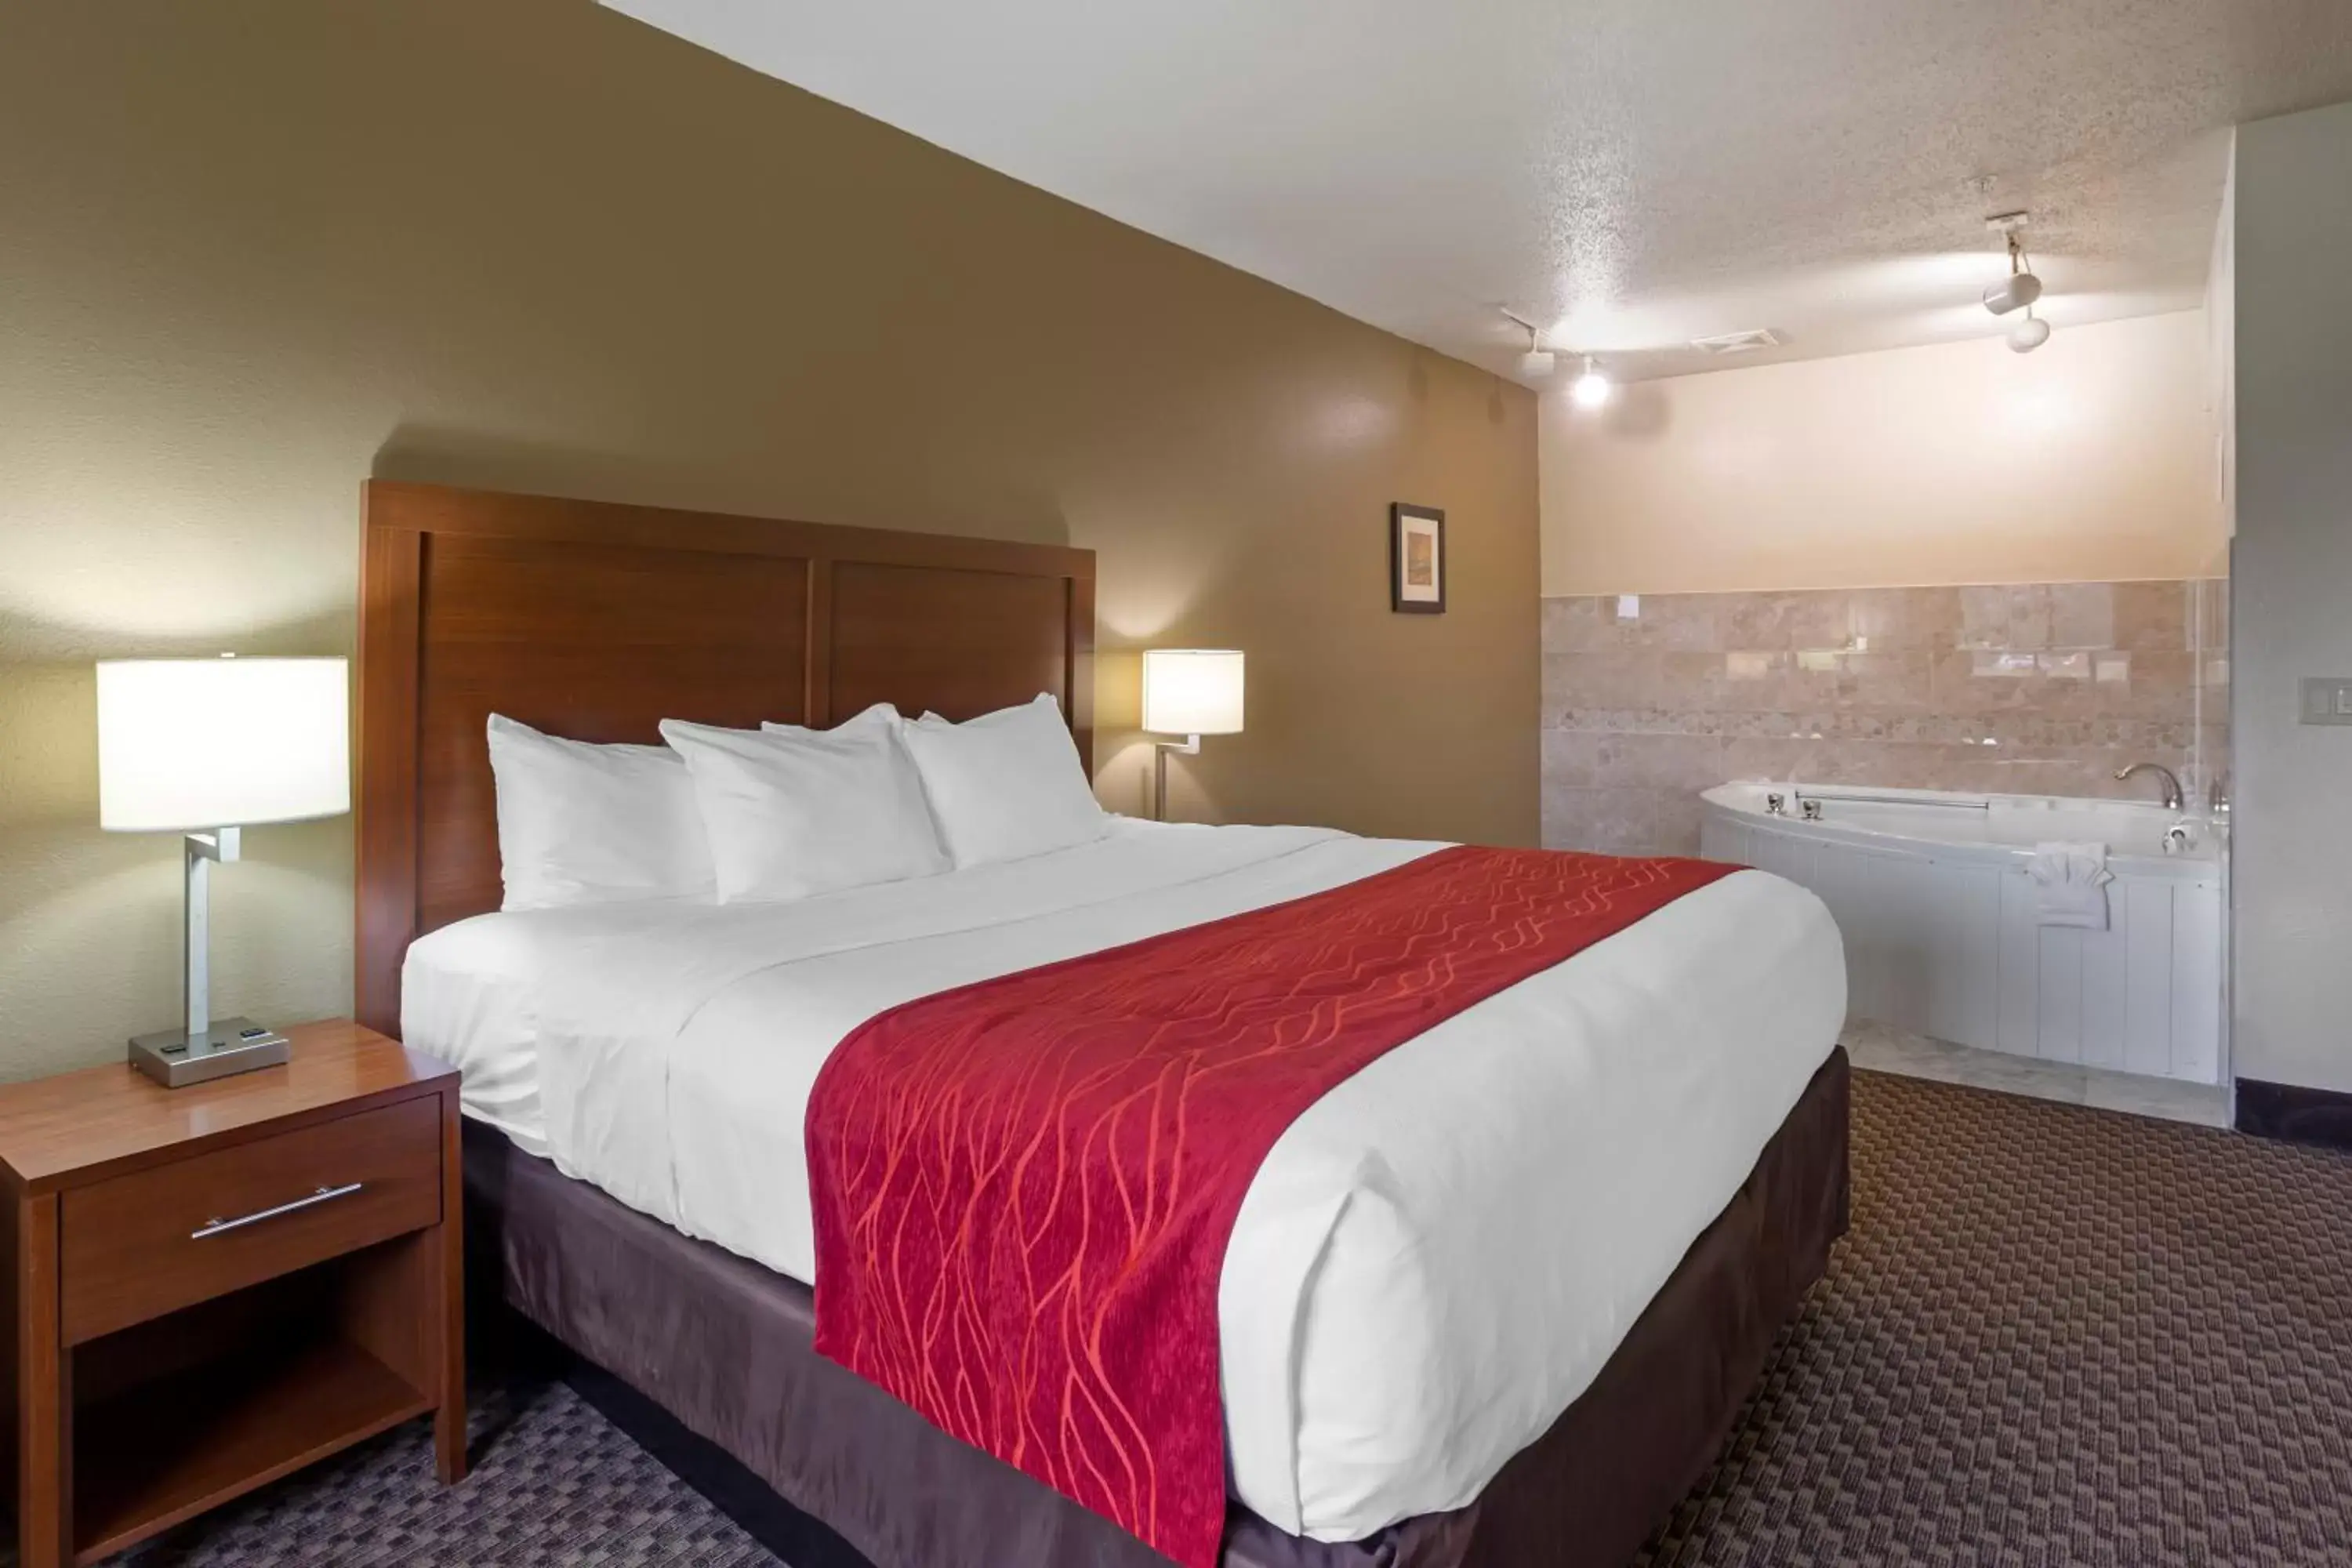 Bed in Comfort Inn Hobart - Merrillville